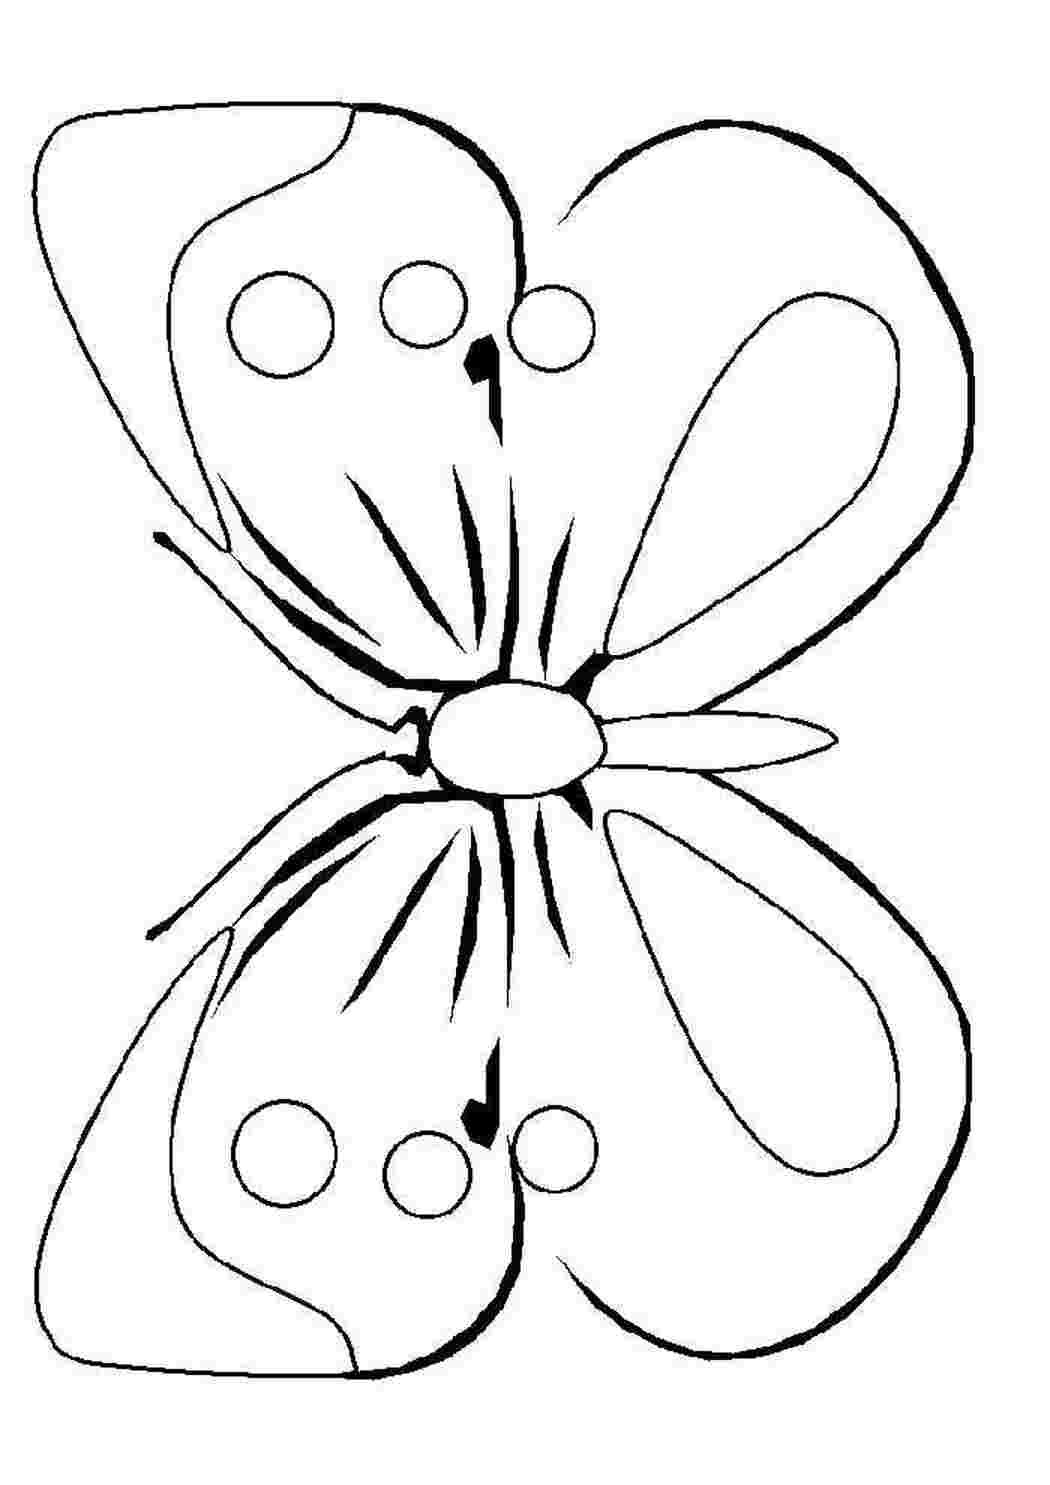 8 для вырезания детям. Раскраска "бабочки". Бабочка раскраска для детей. Бабочка для раскрашивания для детей. Раскраска для малы бабочка.